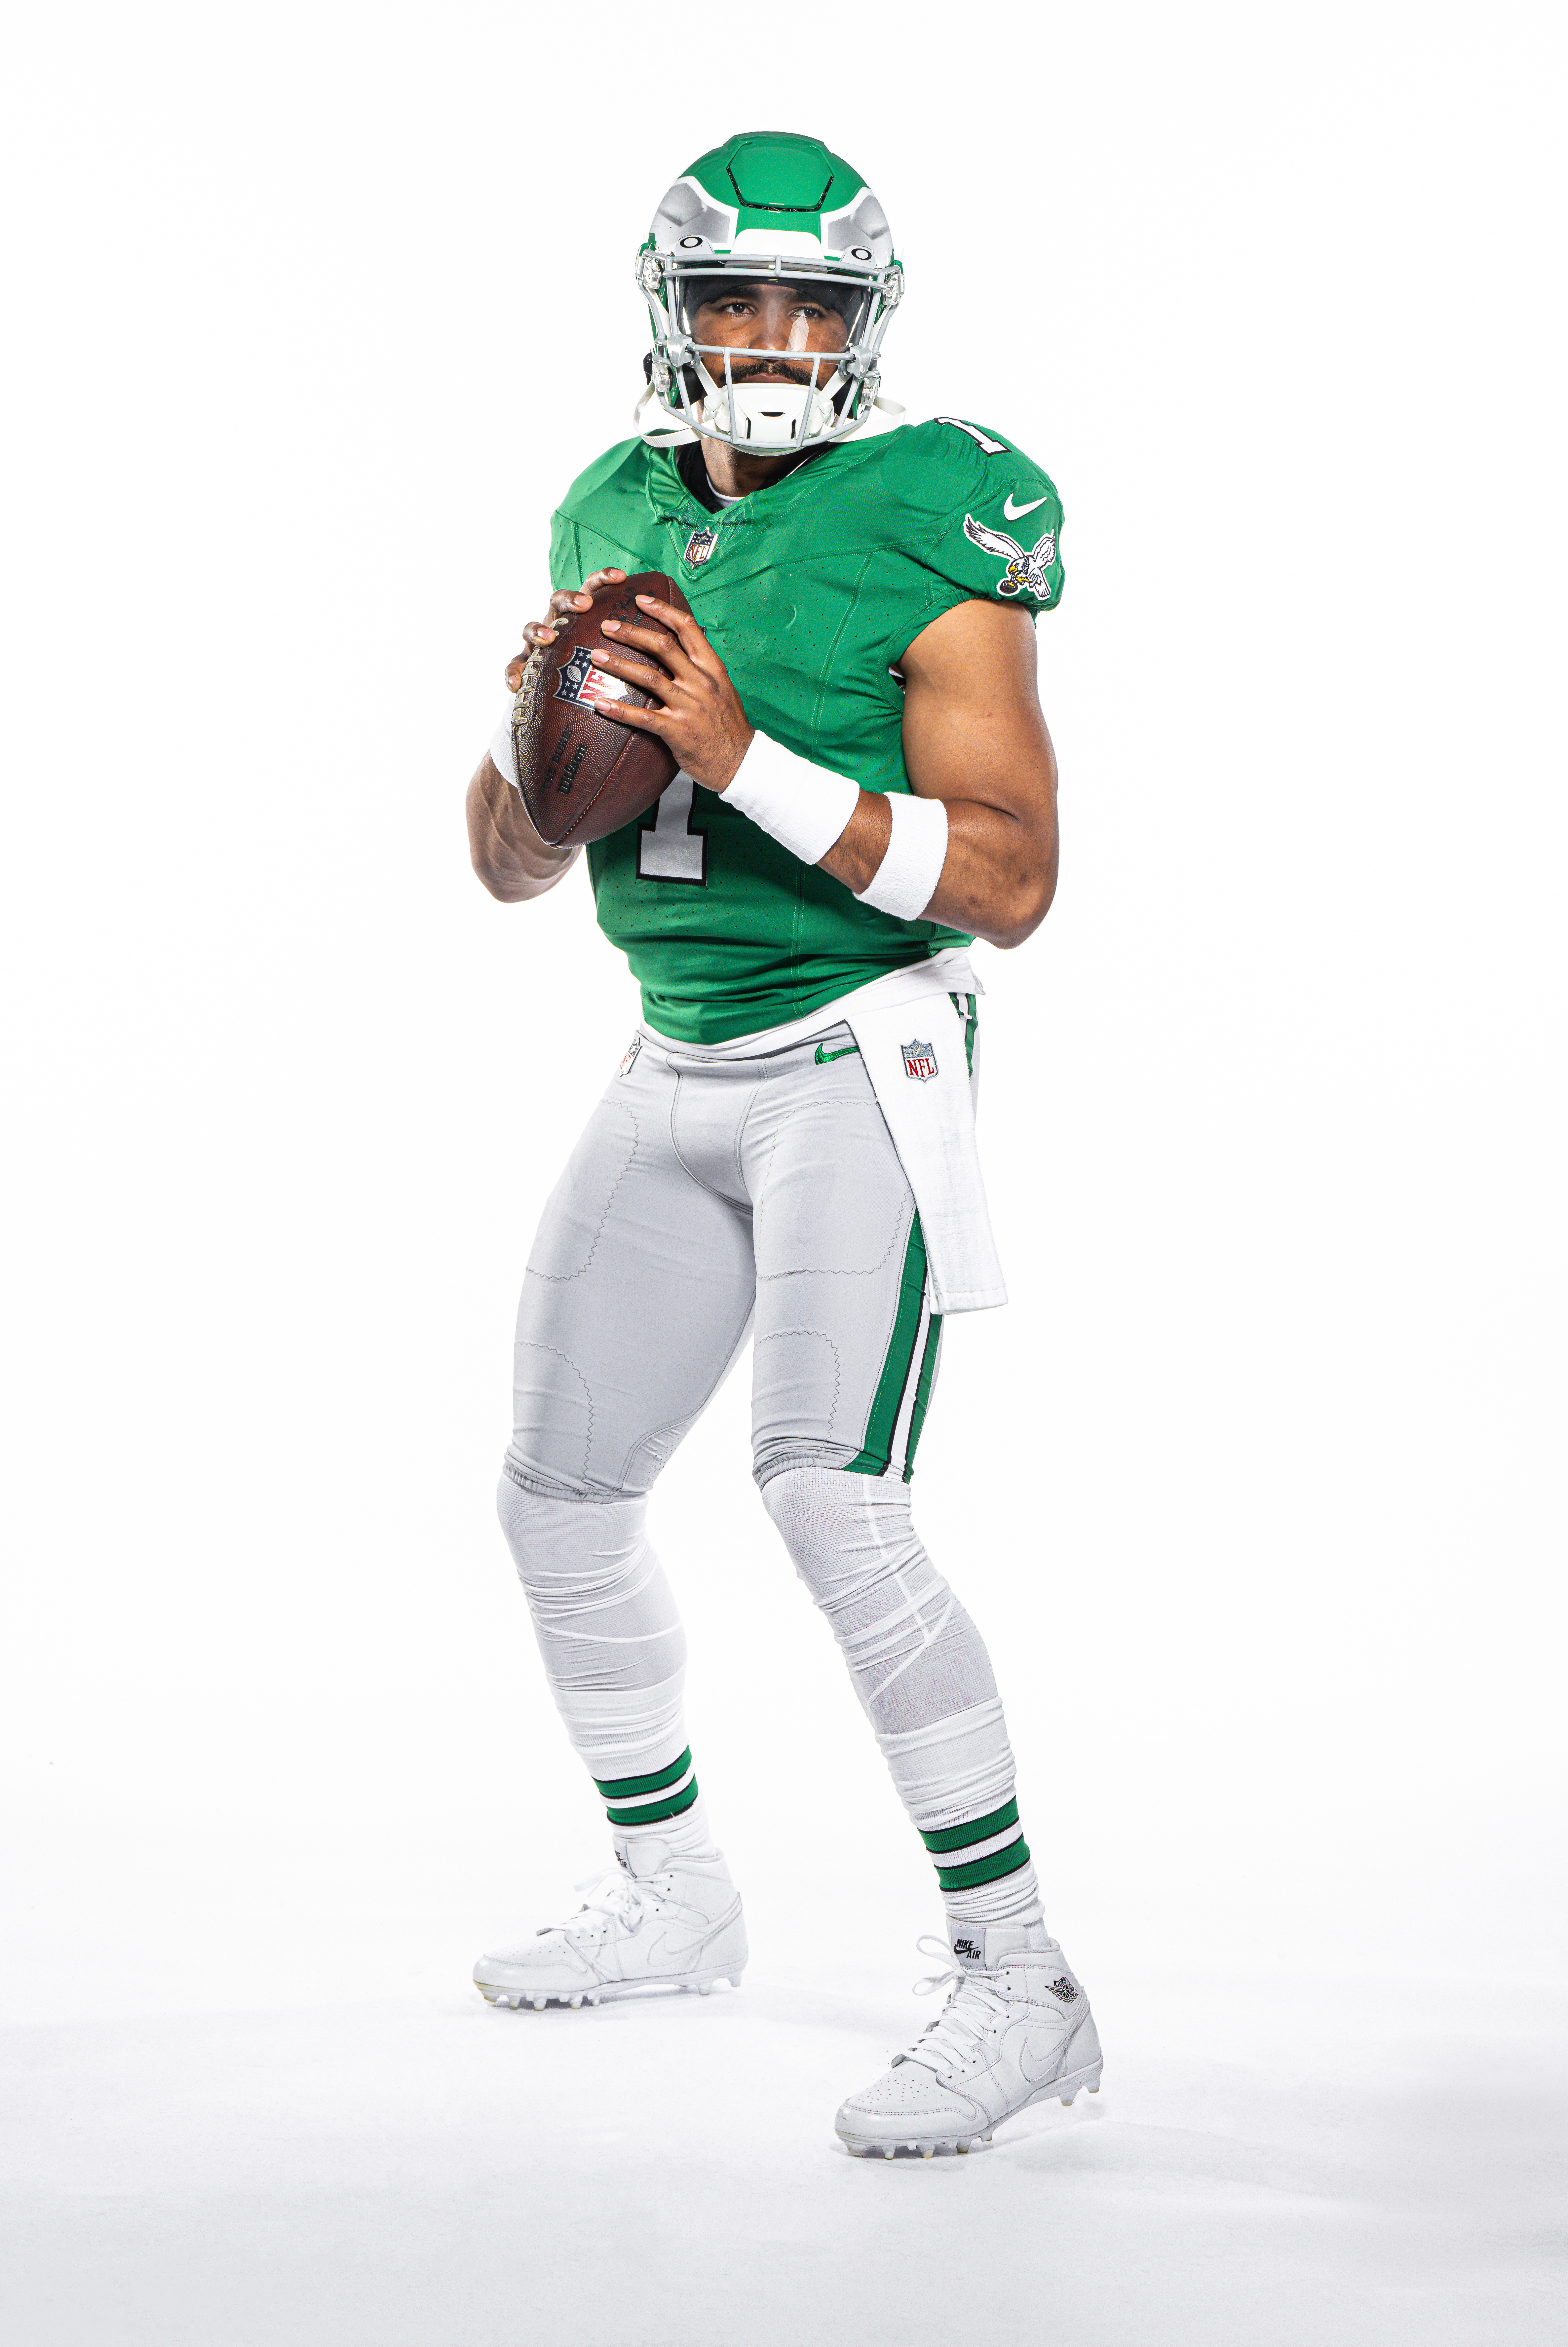 Eagles to wear kelly green jerseys twice in 2023 – NBC Sports